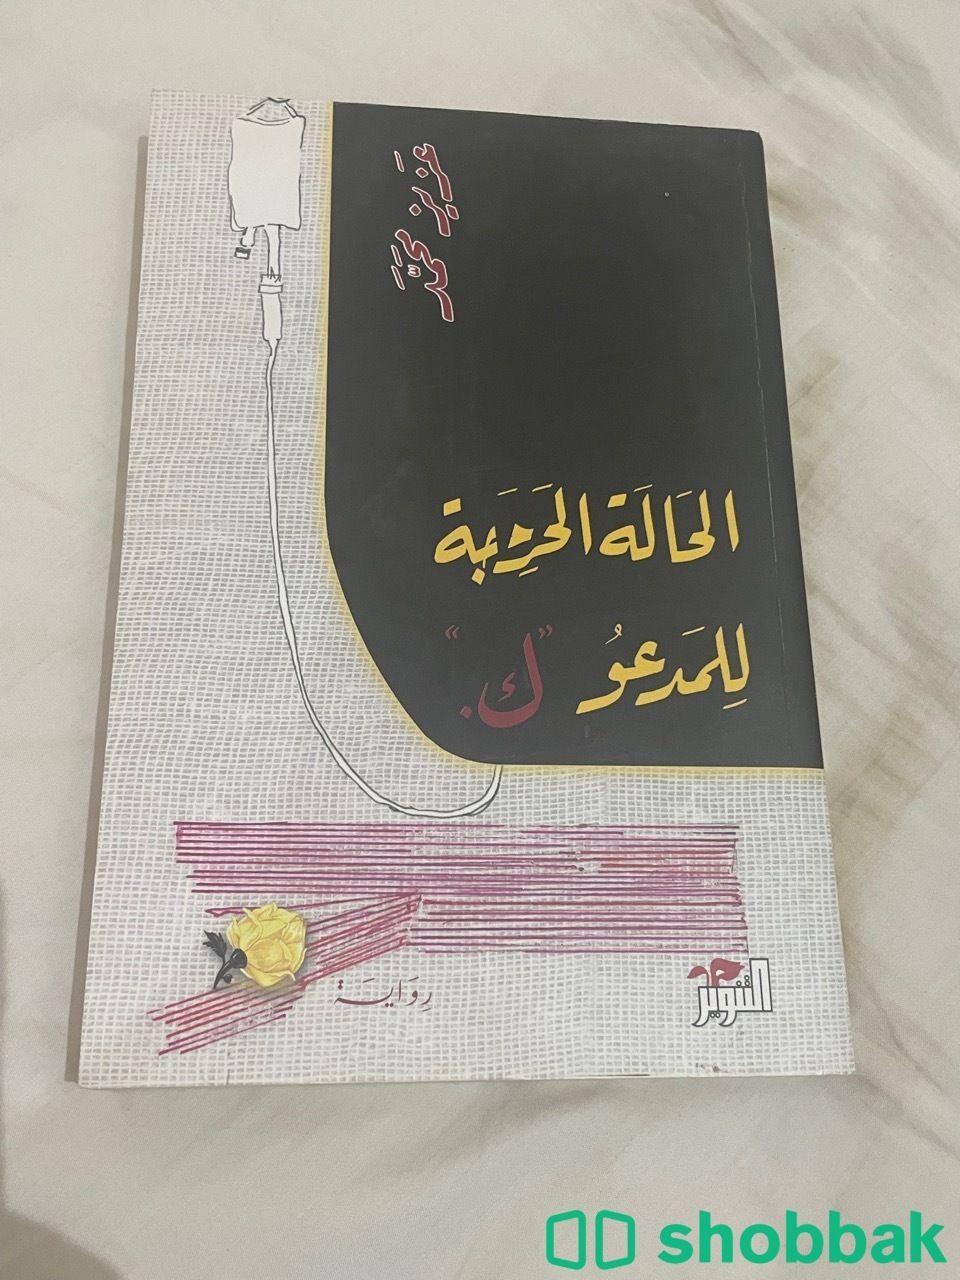 كتاب ( الحالة الحرجة للمدعو ك ) Shobbak Saudi Arabia